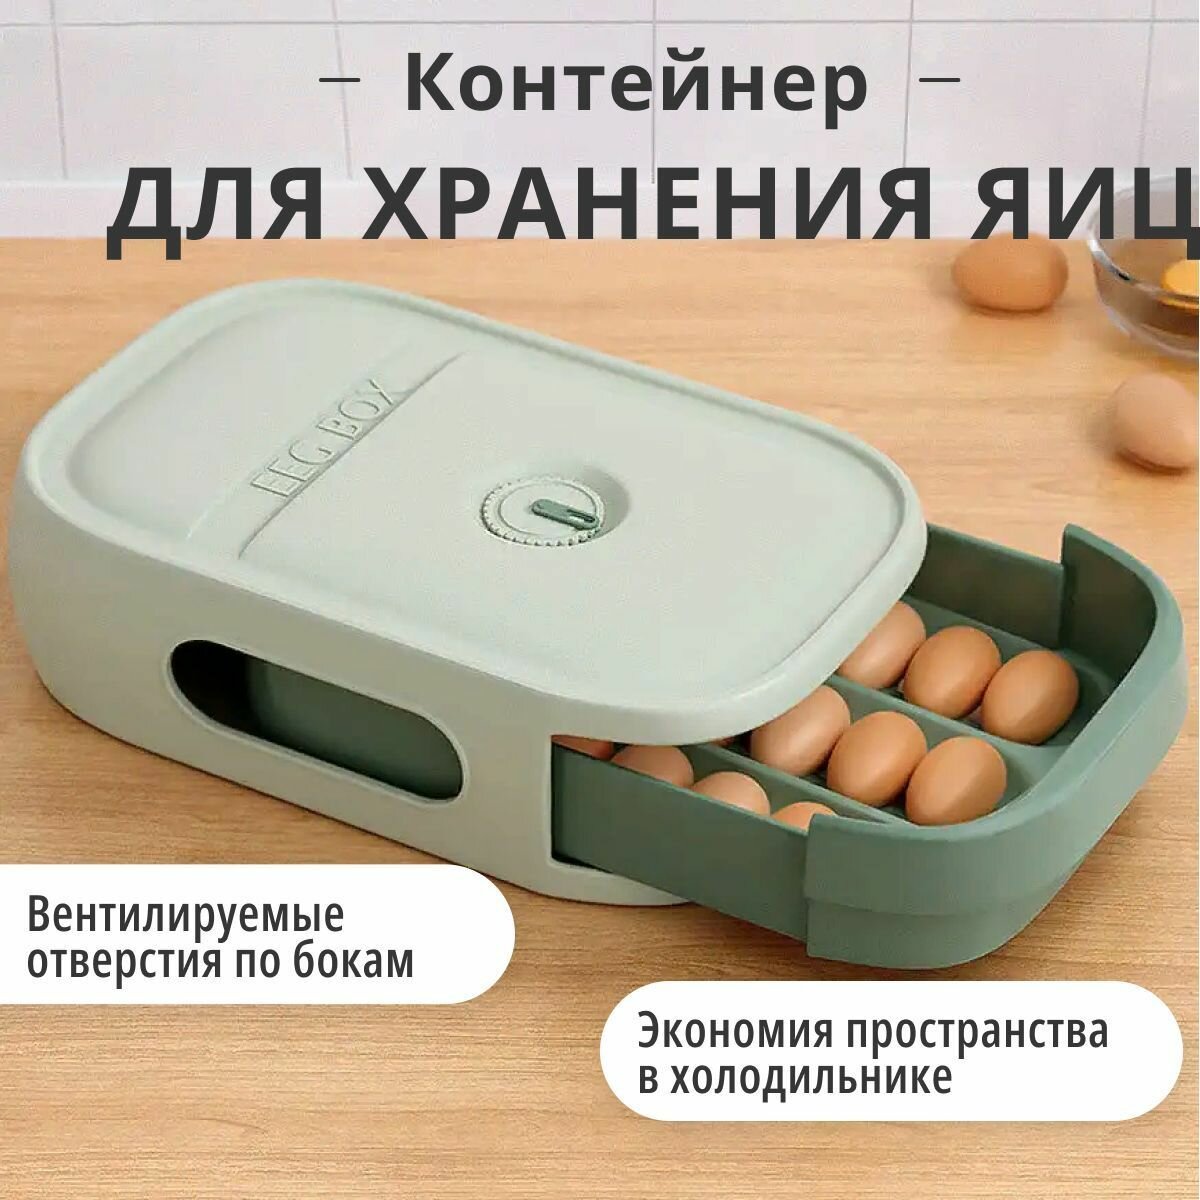 Контейнер для яиц/органайзер для хранения в холодильнике и перевозки яиц в ассортименте/до 20 шт